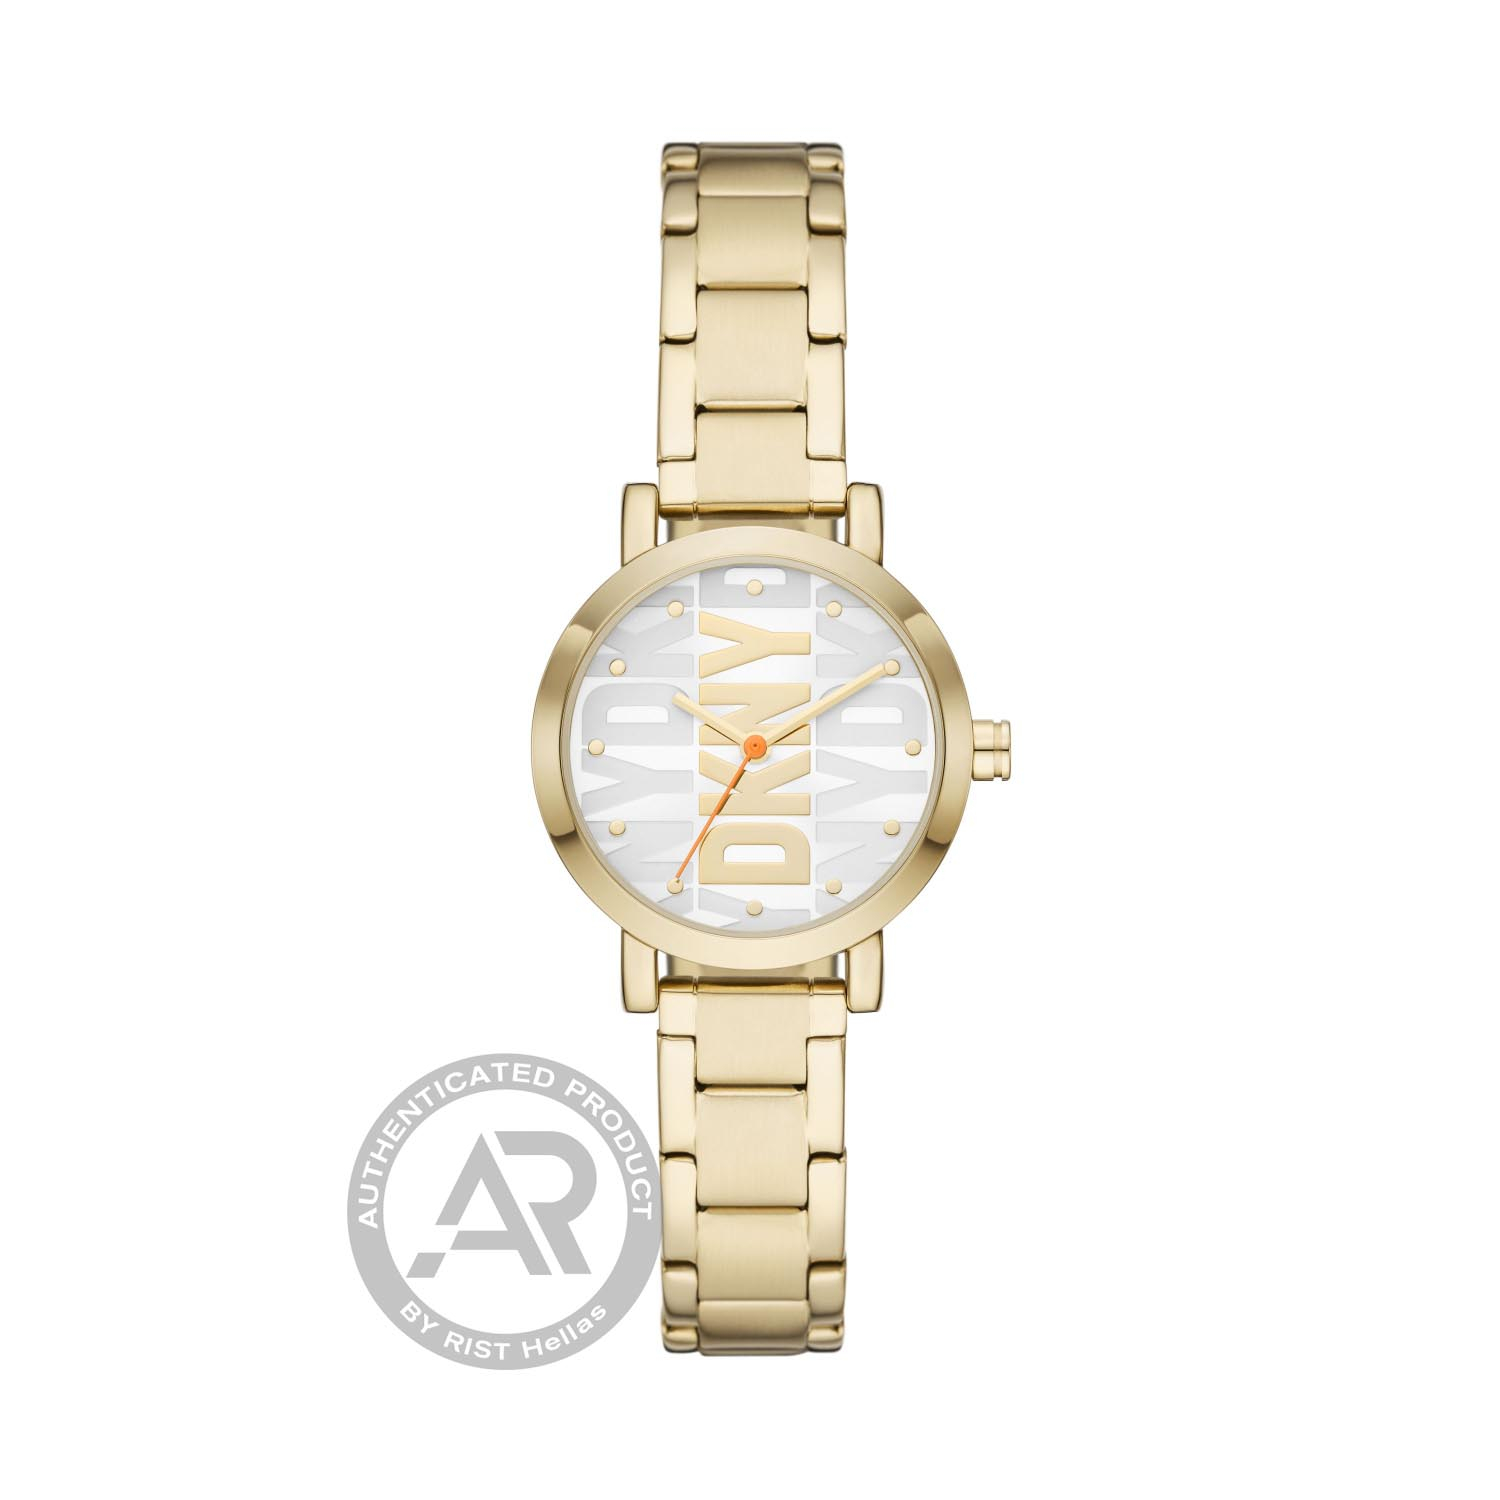 Γυναικείο ρολόι DKNY SOHO από χρυσό ανοξείδωτο ατσάλι με ασημί καντράν και μπρασελέ.